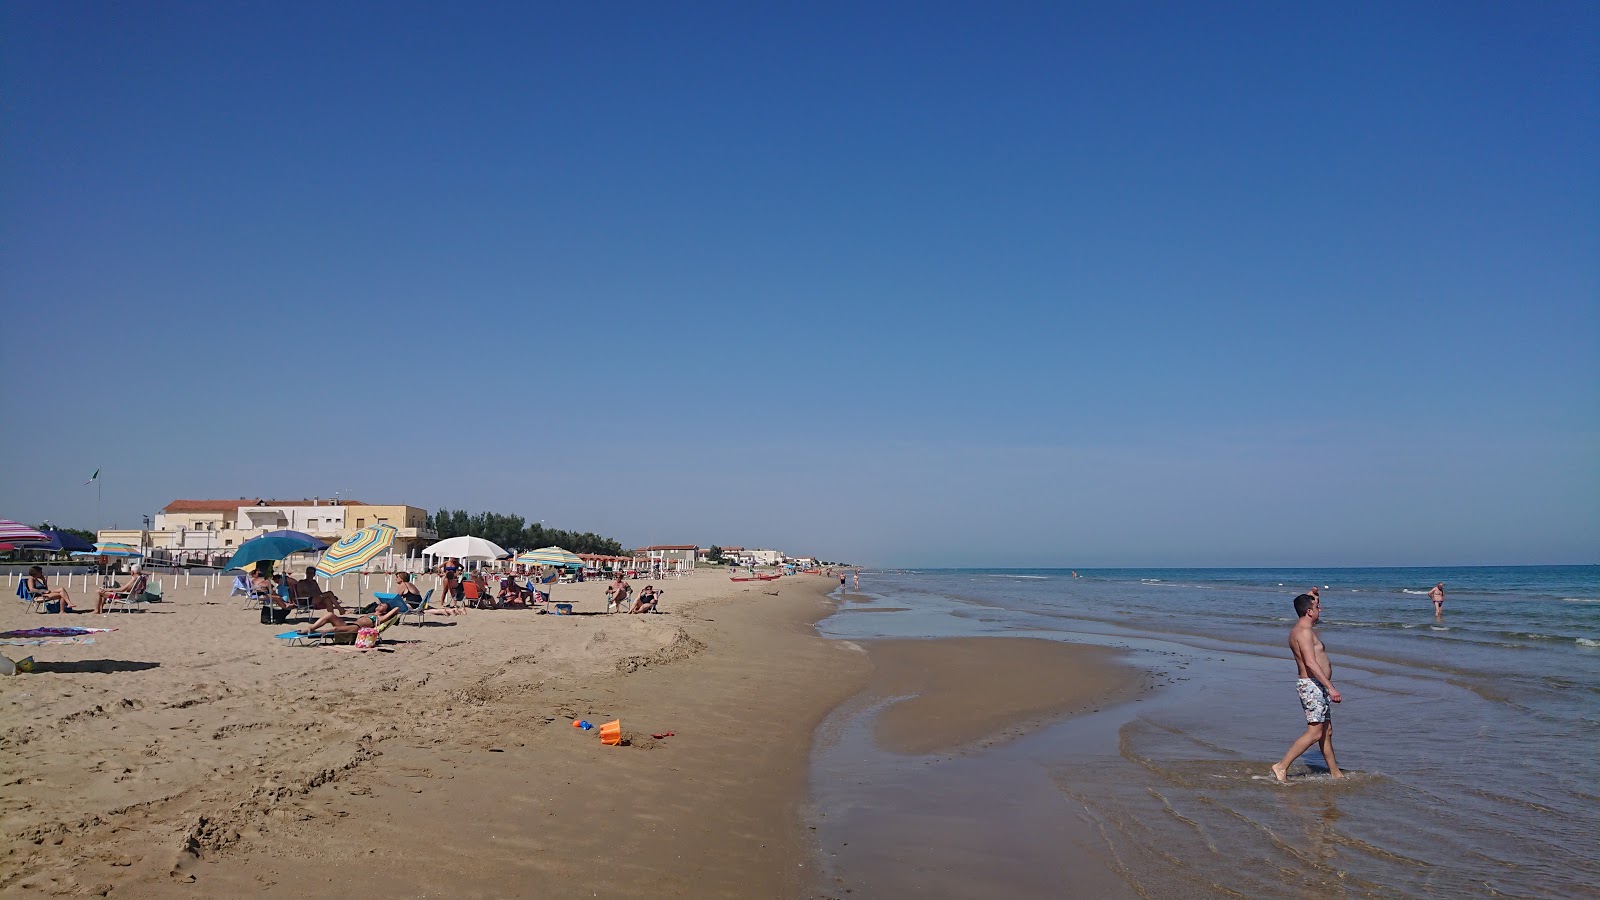 Foto de Spiaggia di Torre Mileto - lugar popular entre los conocedores del relax